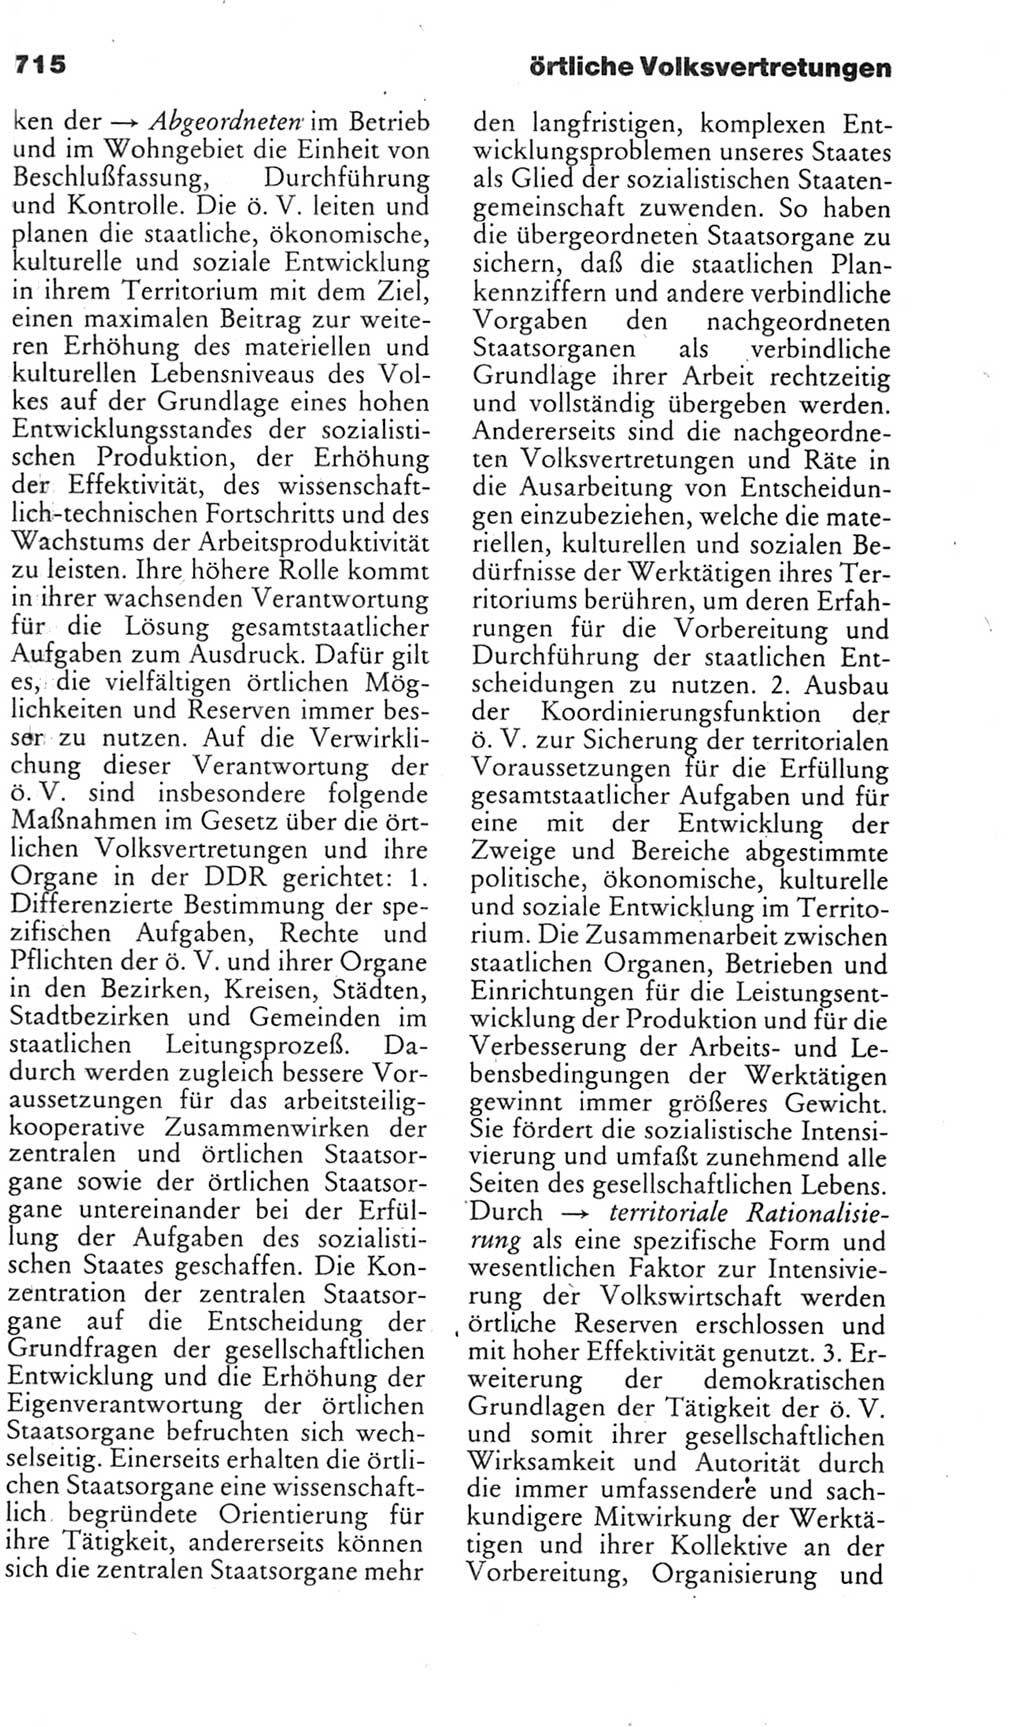 Kleines politisches Wörterbuch [Deutsche Demokratische Republik (DDR)] 1985, Seite 715 (Kl. pol. Wb. DDR 1985, S. 715)